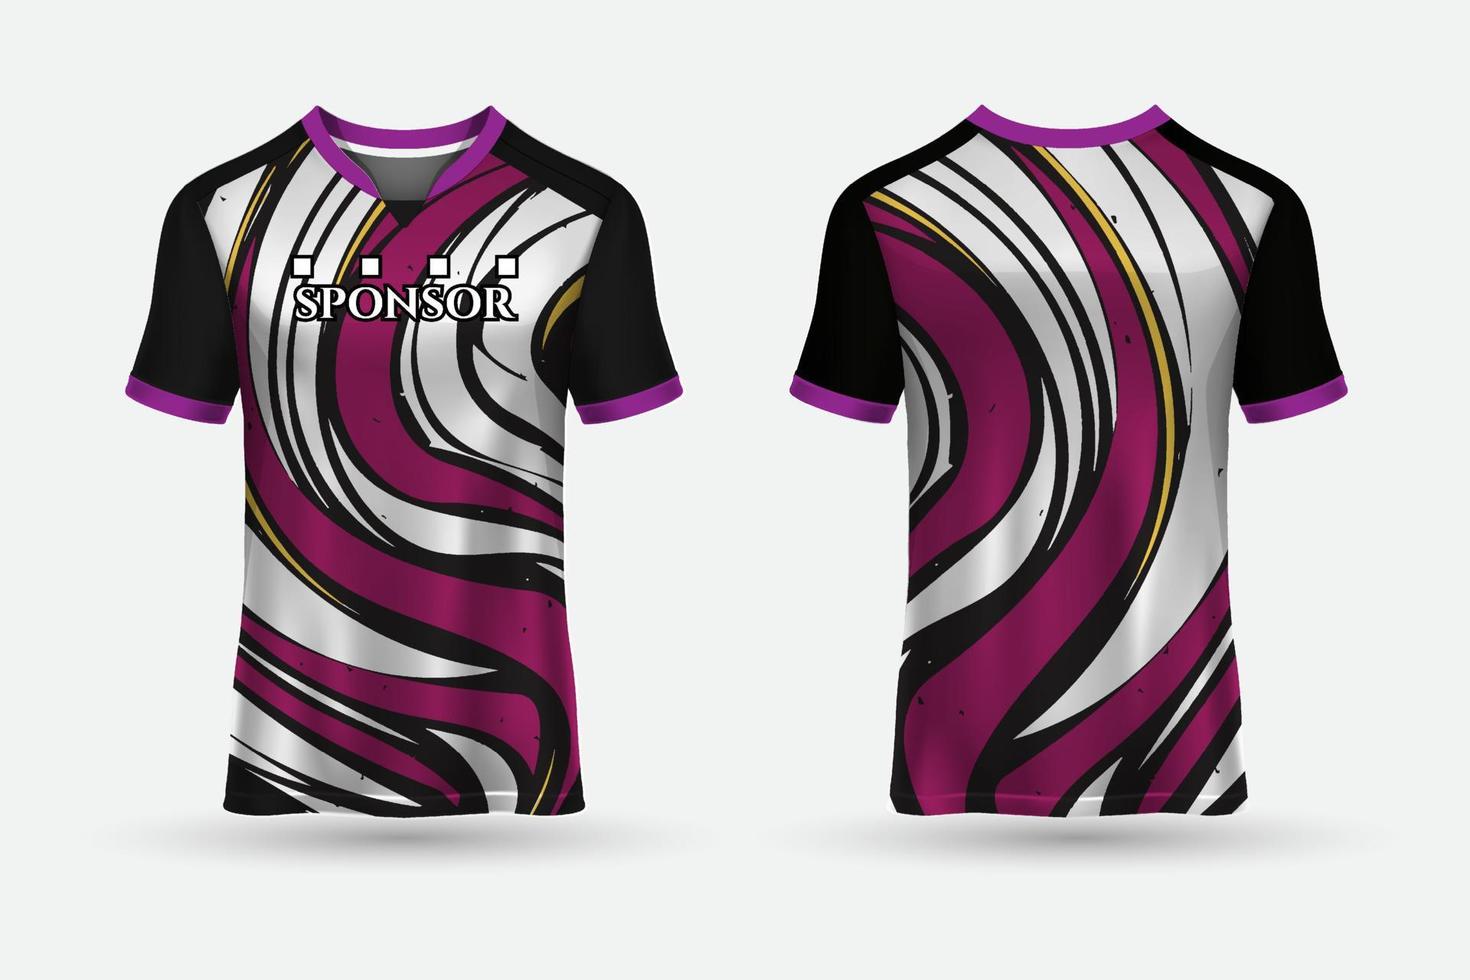 vector de diseño de camisetas de fútbol premium. vector de fondo de diseño deportivo de camiseta.